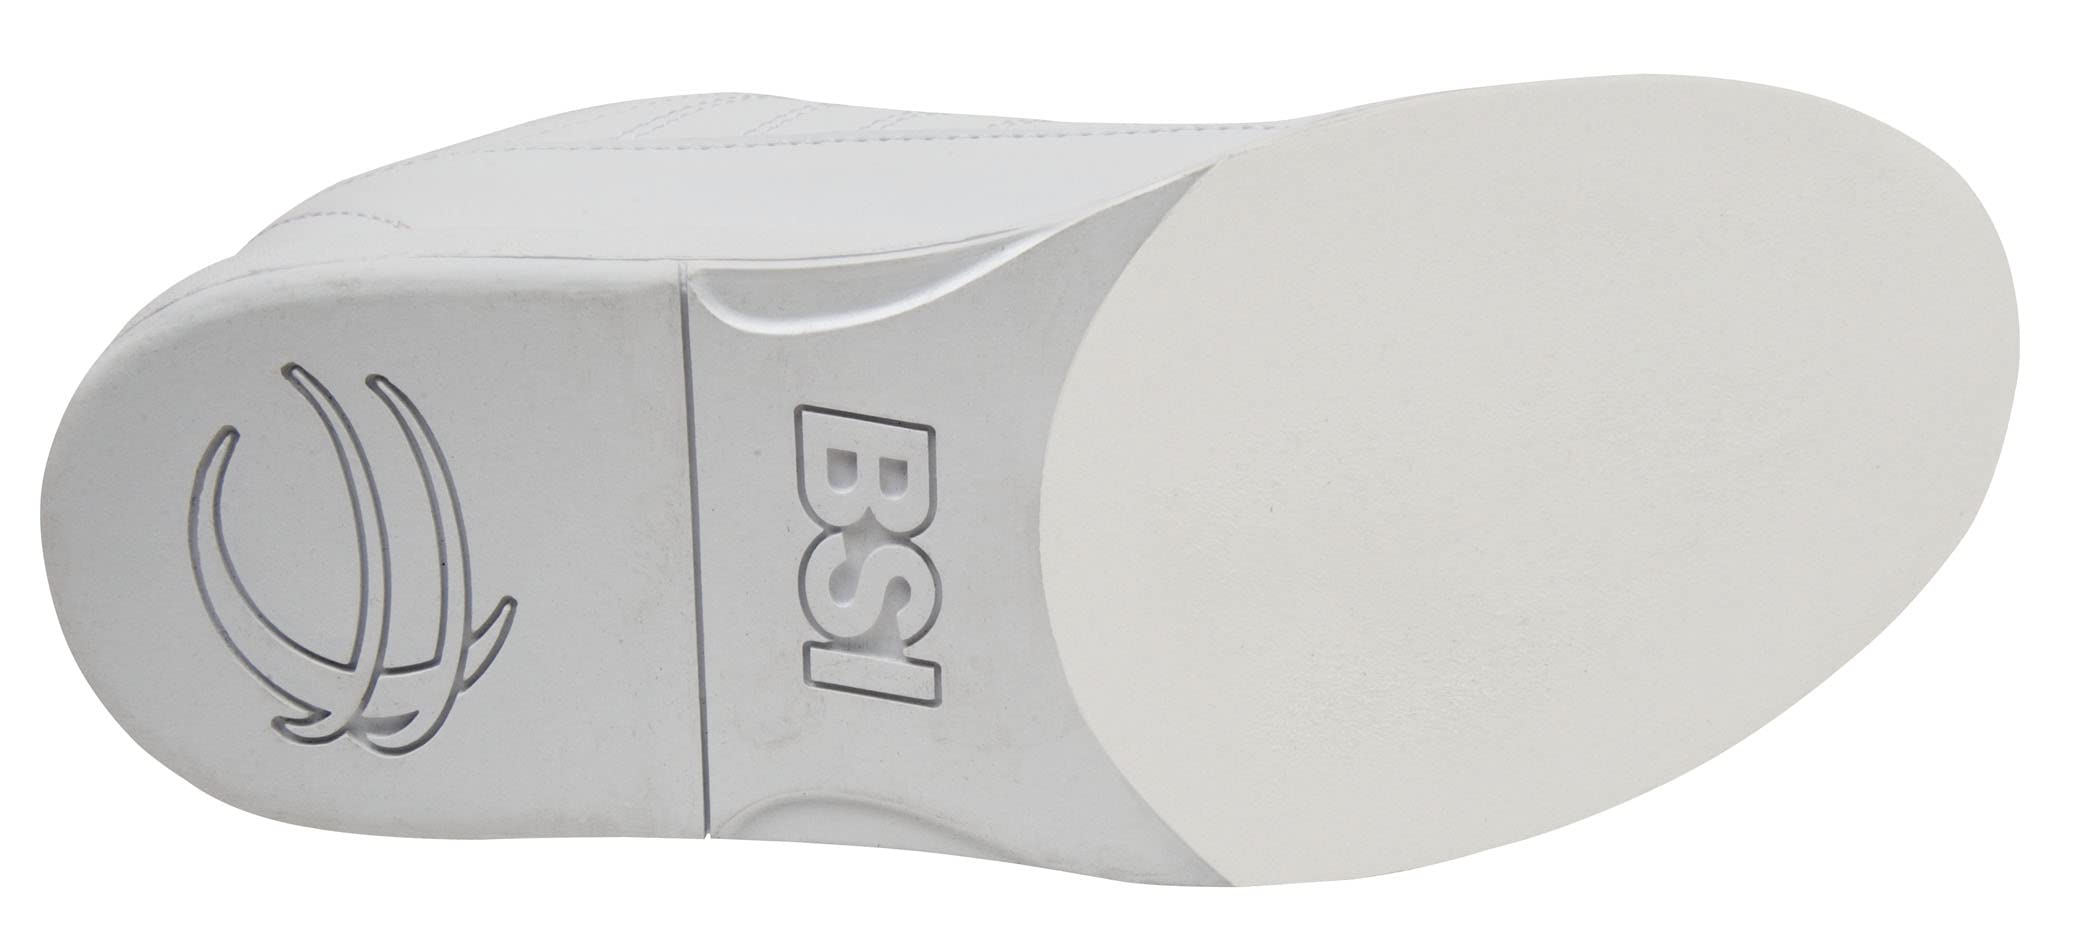 BSI Boys' Bowling Shoes White Size 2